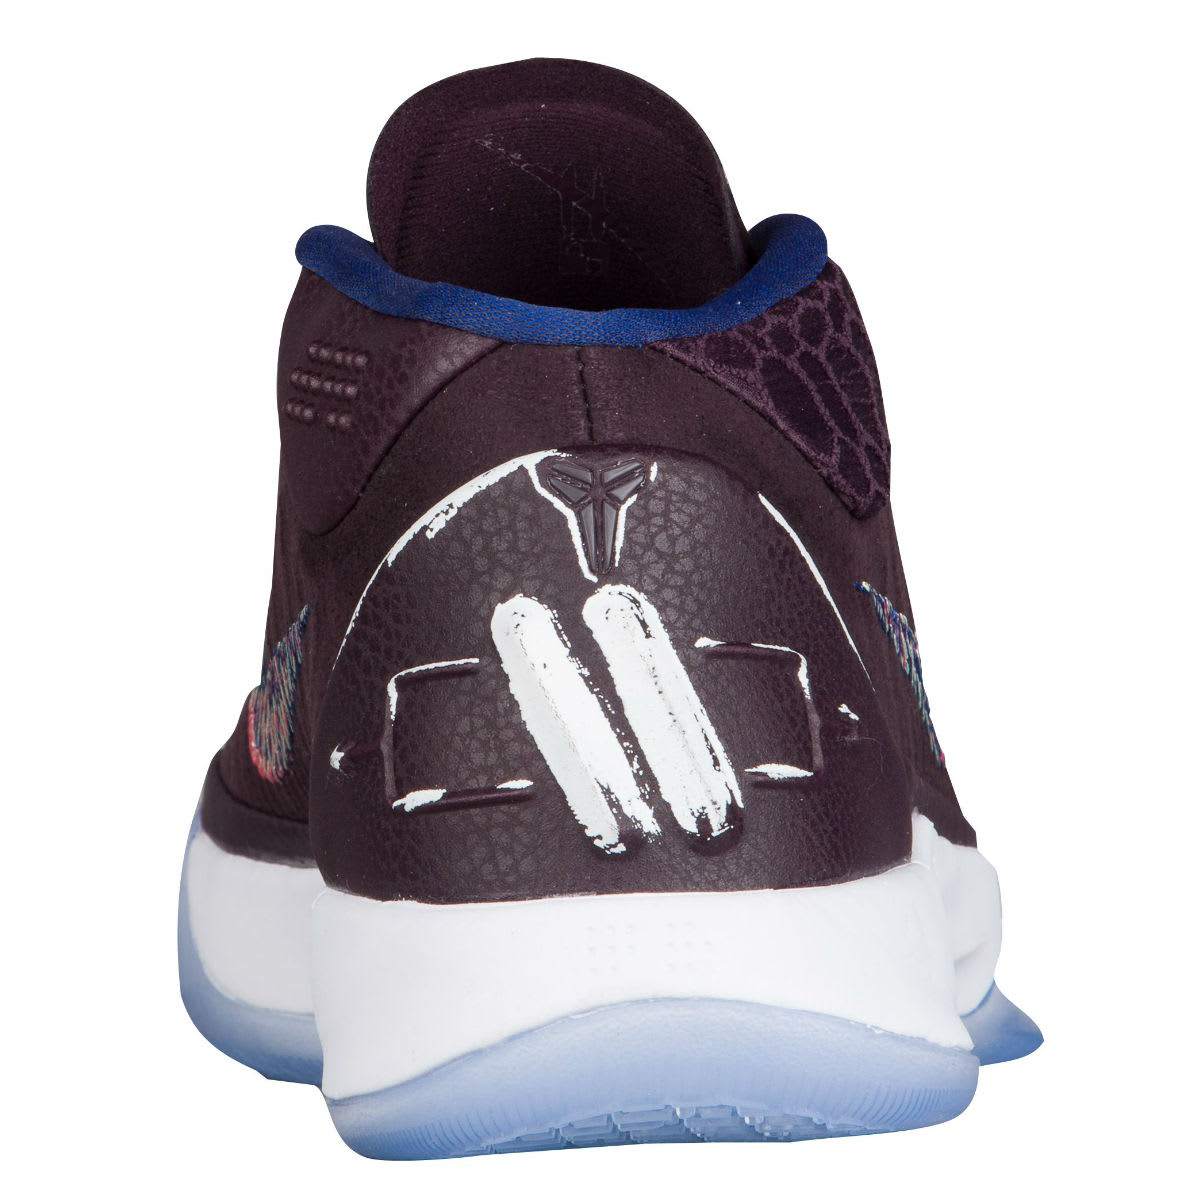 Nike Kobe A.D. Mid Port Wine Release Date 922482-602 Heel